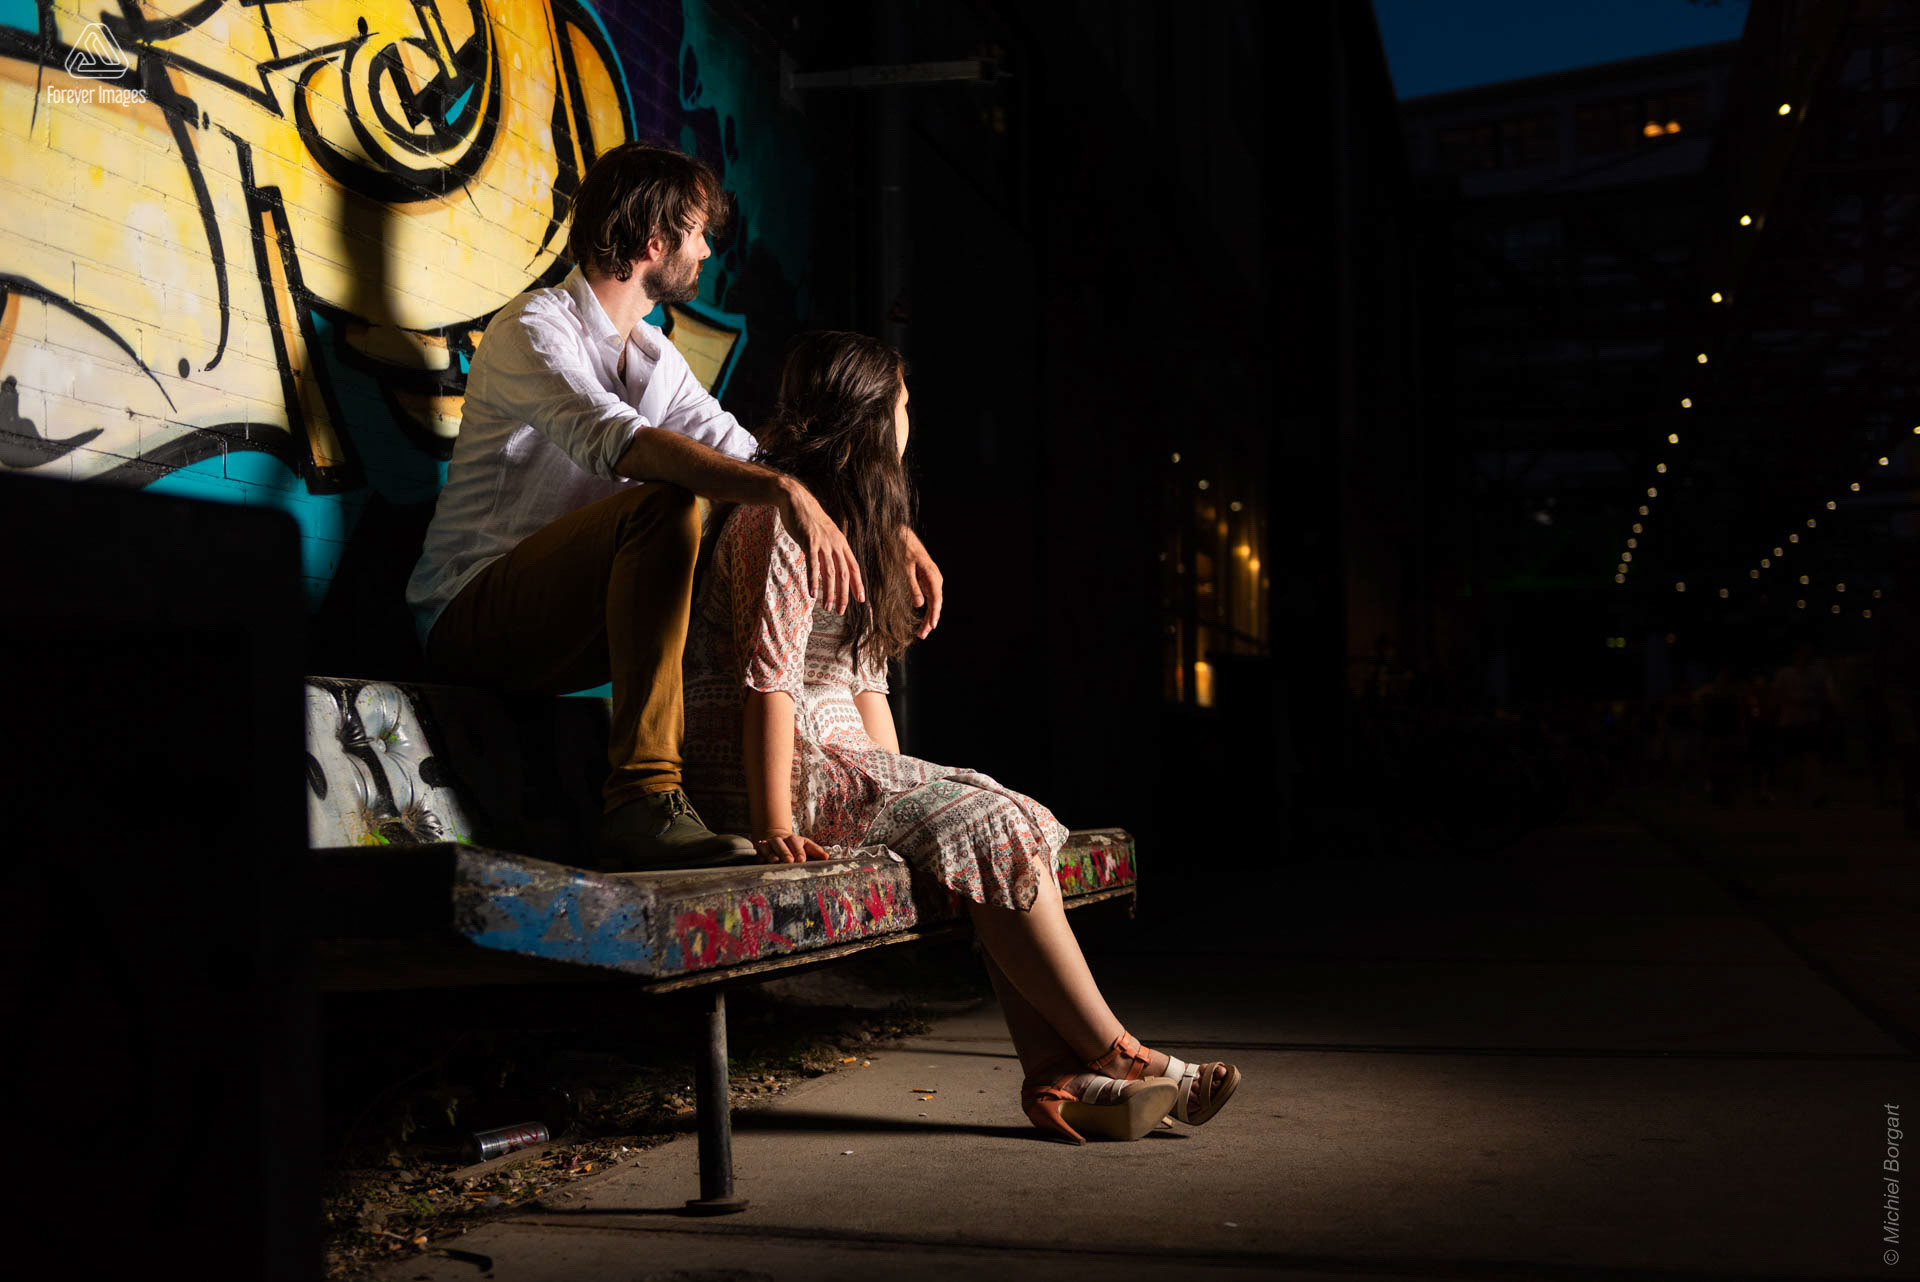 Portrait photo couple on concrete sofa between graffiti | Strijp | Portrait Photographer Michiel Borgart - Forever Images.